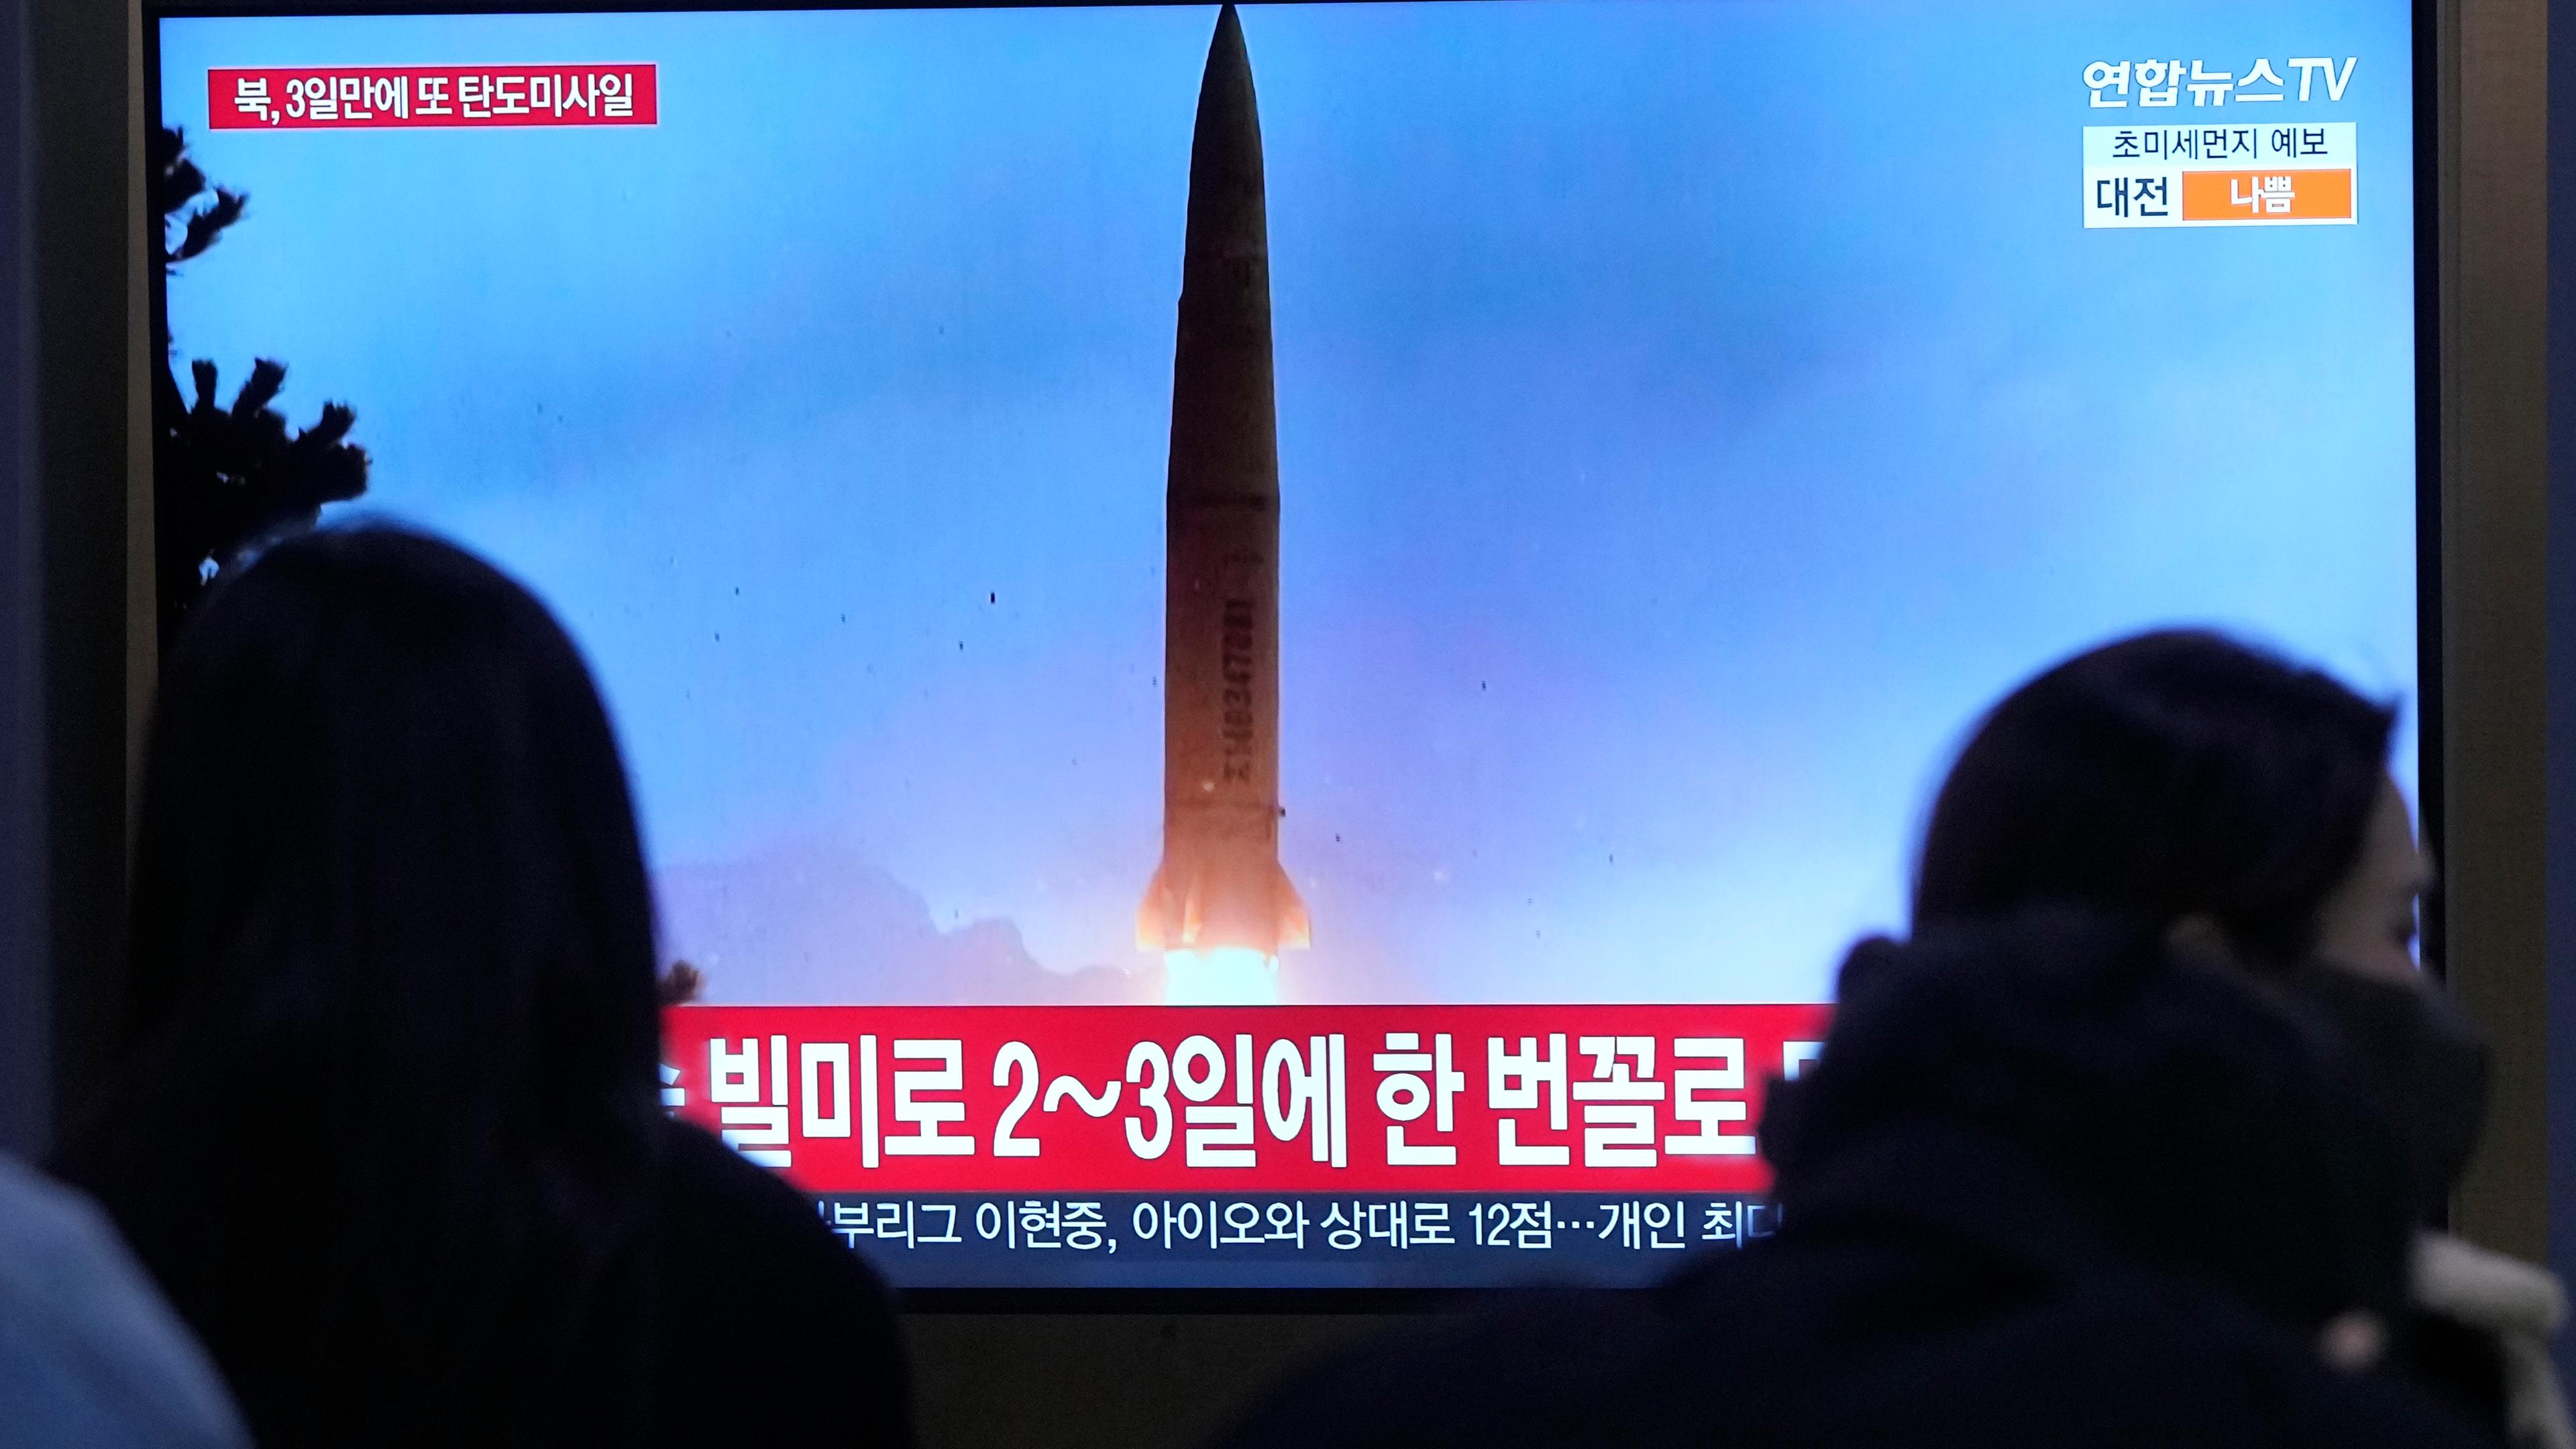 Ein TV-Bildschirm im südkoreanischen Seoul zeigt ein Archivbild eines Raketenstarts von Nordkorea.